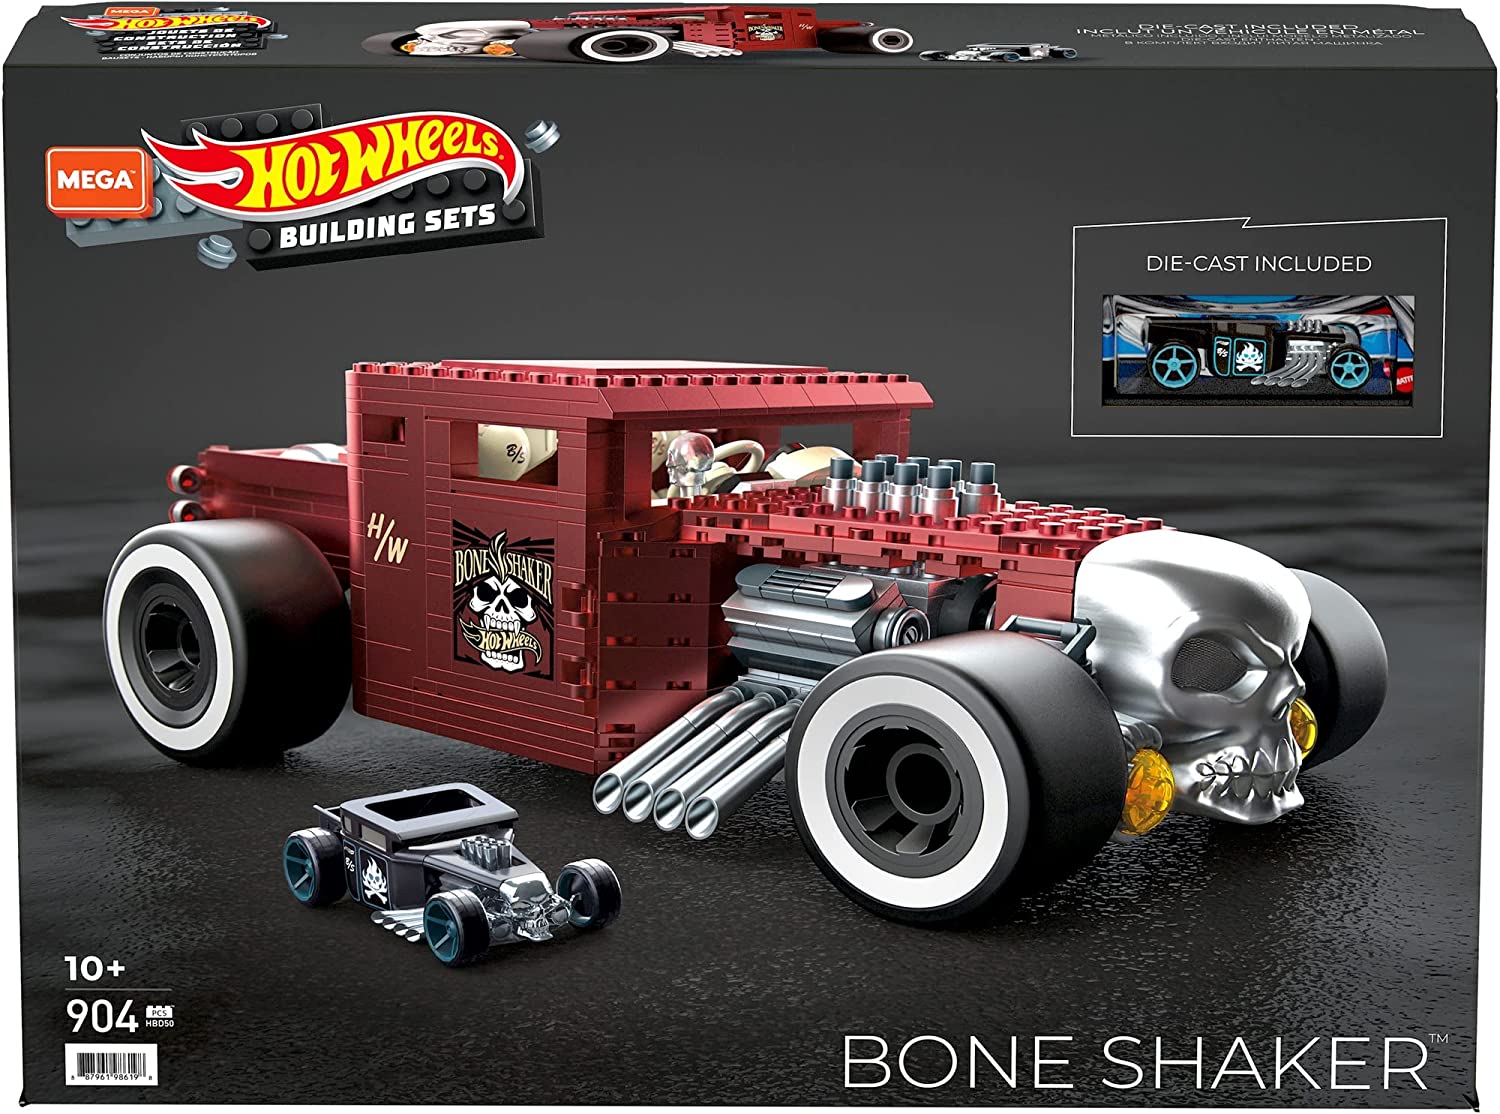 Hot Wheels le quiere dar batalla a LEGO y lanza un Bone Shaker para armar